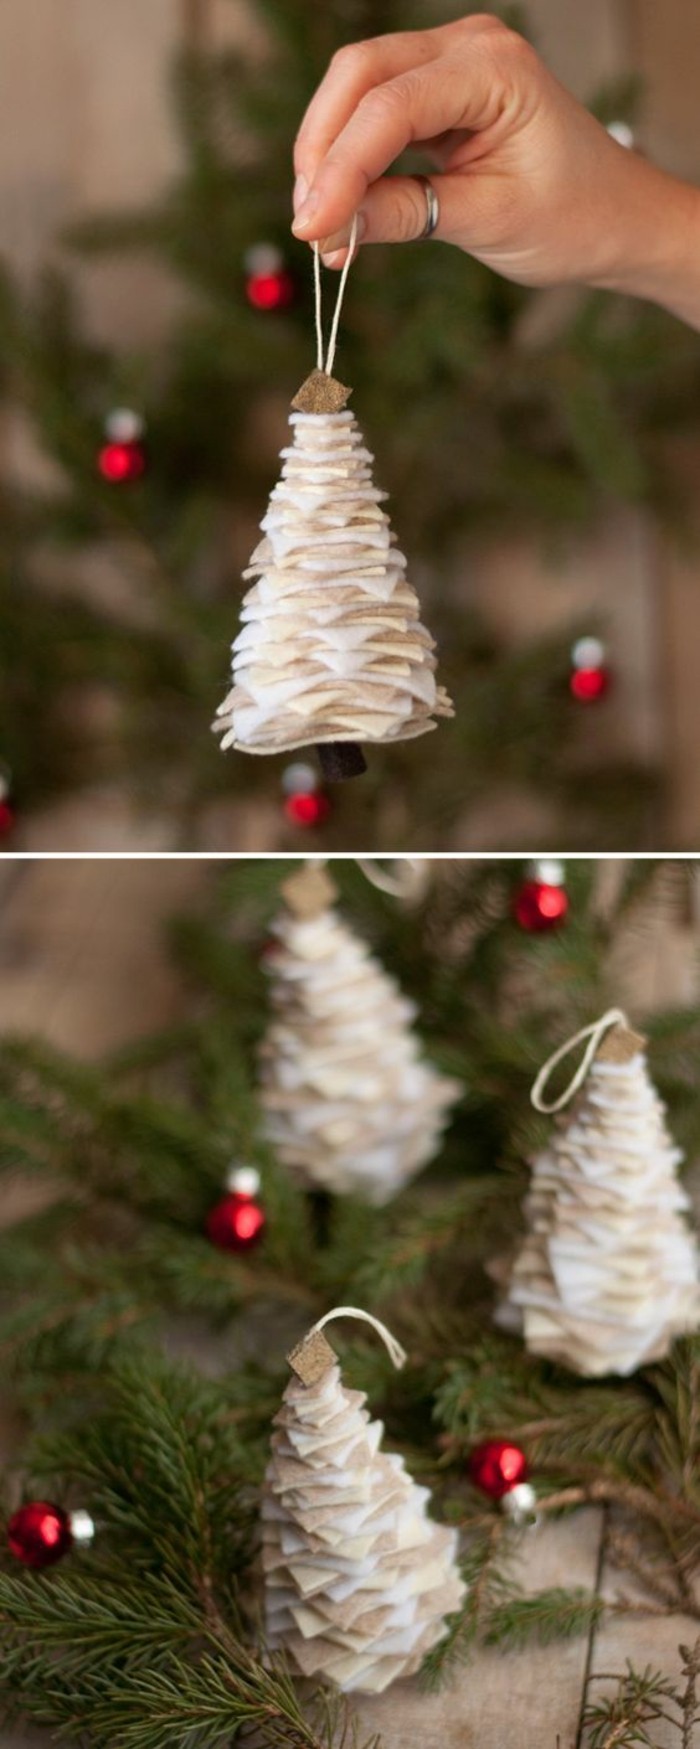 222-tannenbaum-basteln-aus-weisem-stoff-weihnachtsdekoration-diy